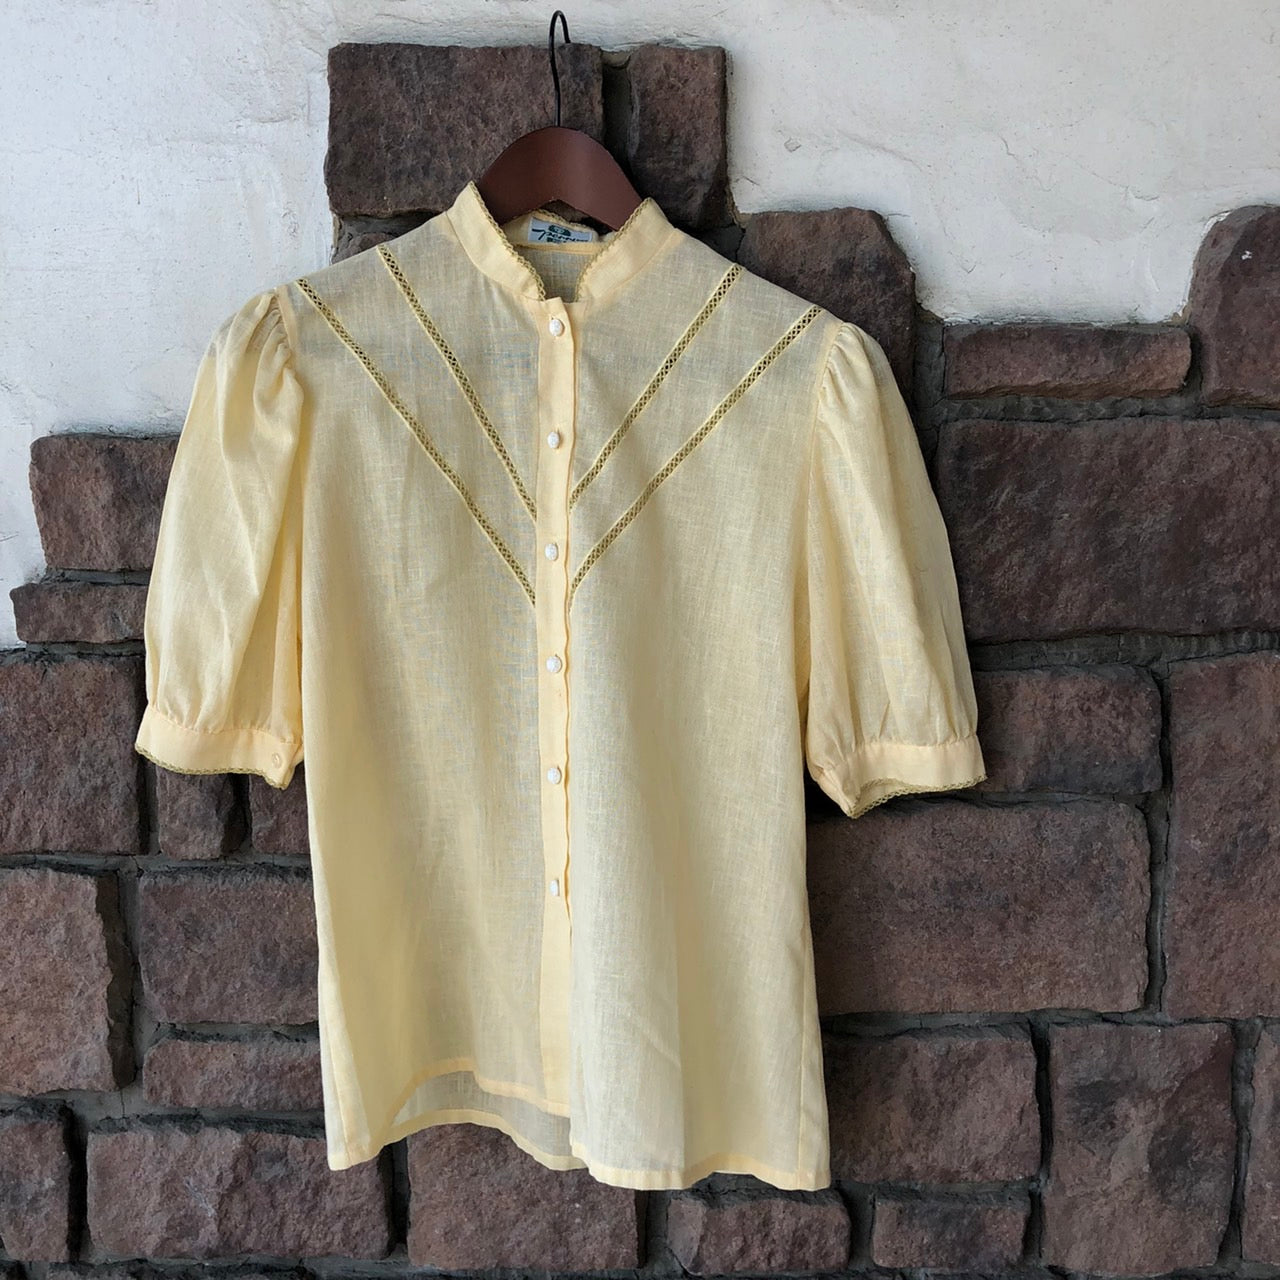 Vintage(ヴィンテージ) パプスリーブ×フレンチボタン半袖シャツ 36(Mサイズ程度) イエロー ドイツ製